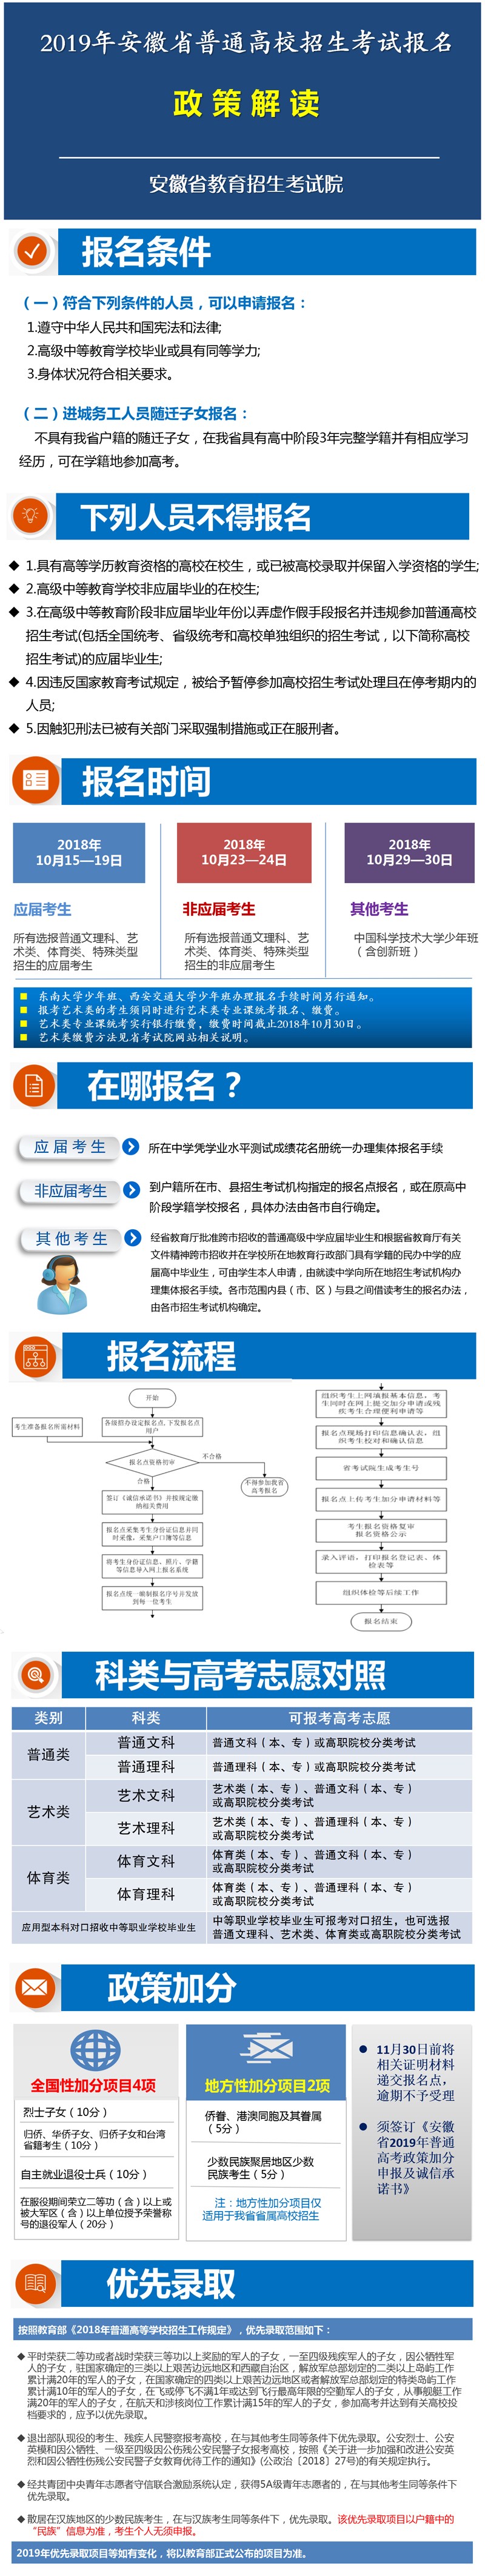 2019年安徽省高考报名安排